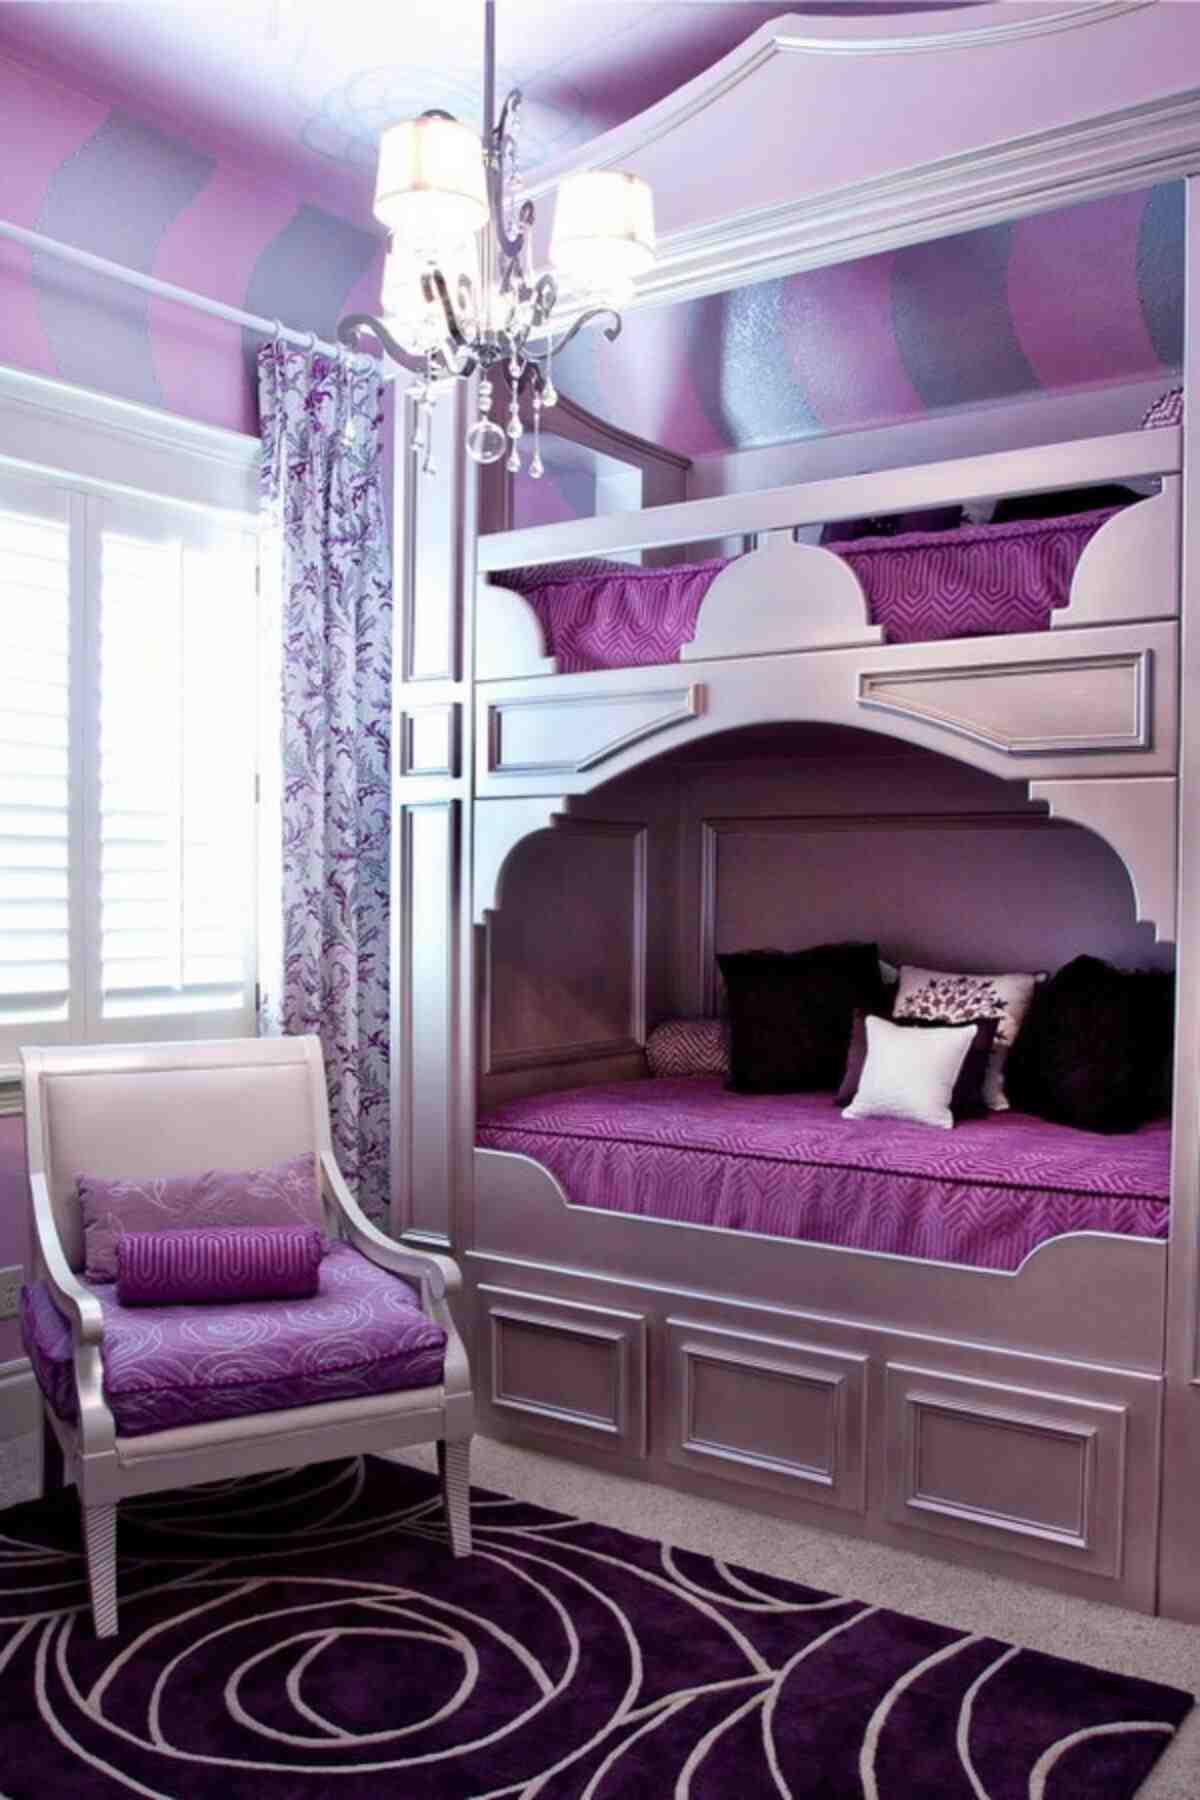 Cool Bunk Beds The Best Kids Room, Tween Girl Bunk Beds